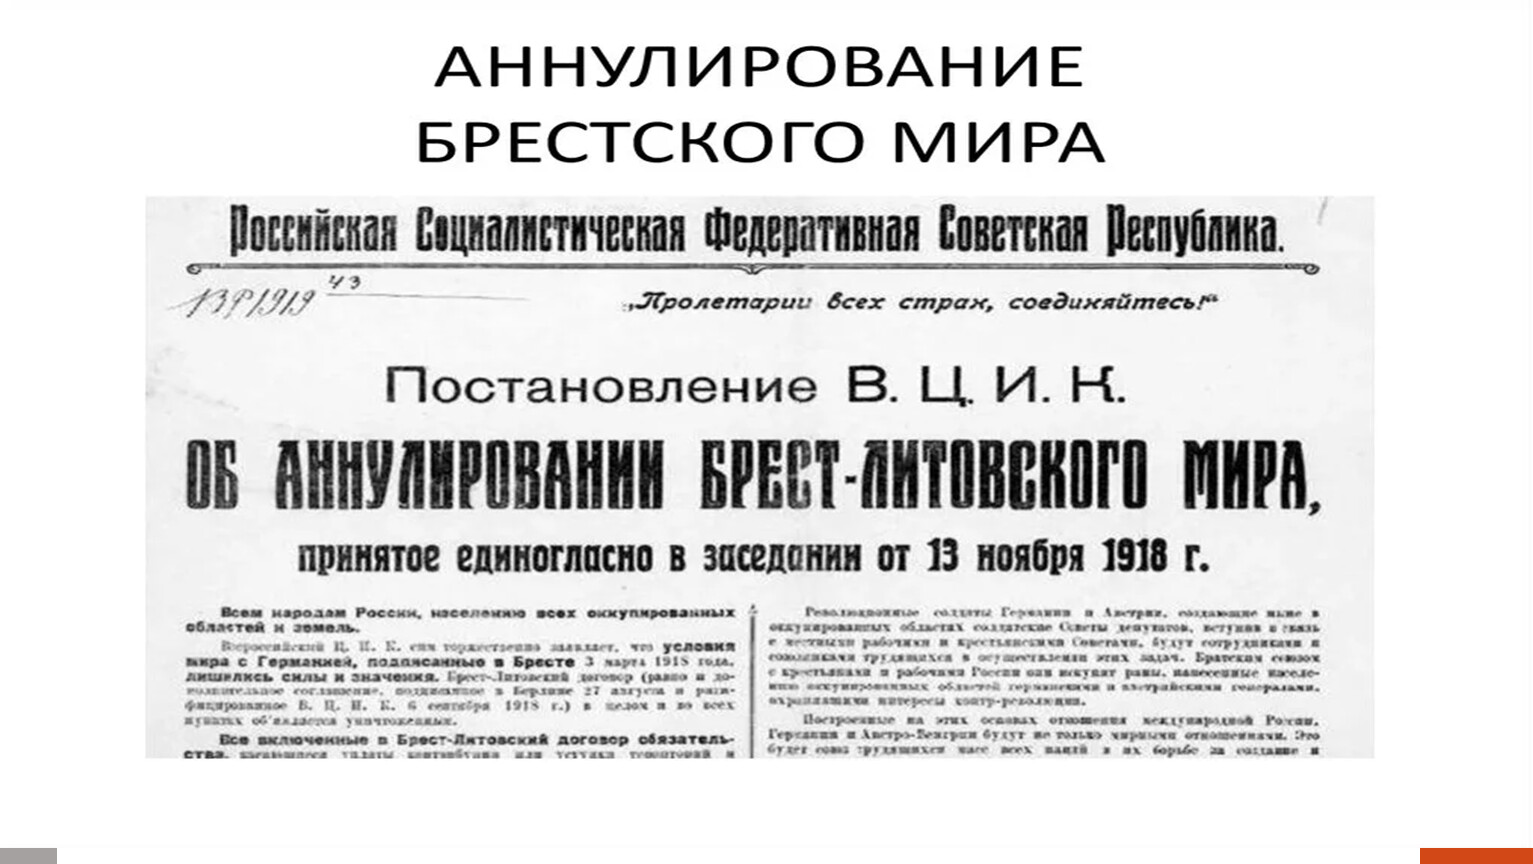 Реферат: Строительство Советской власти и ее триумфальное шествие